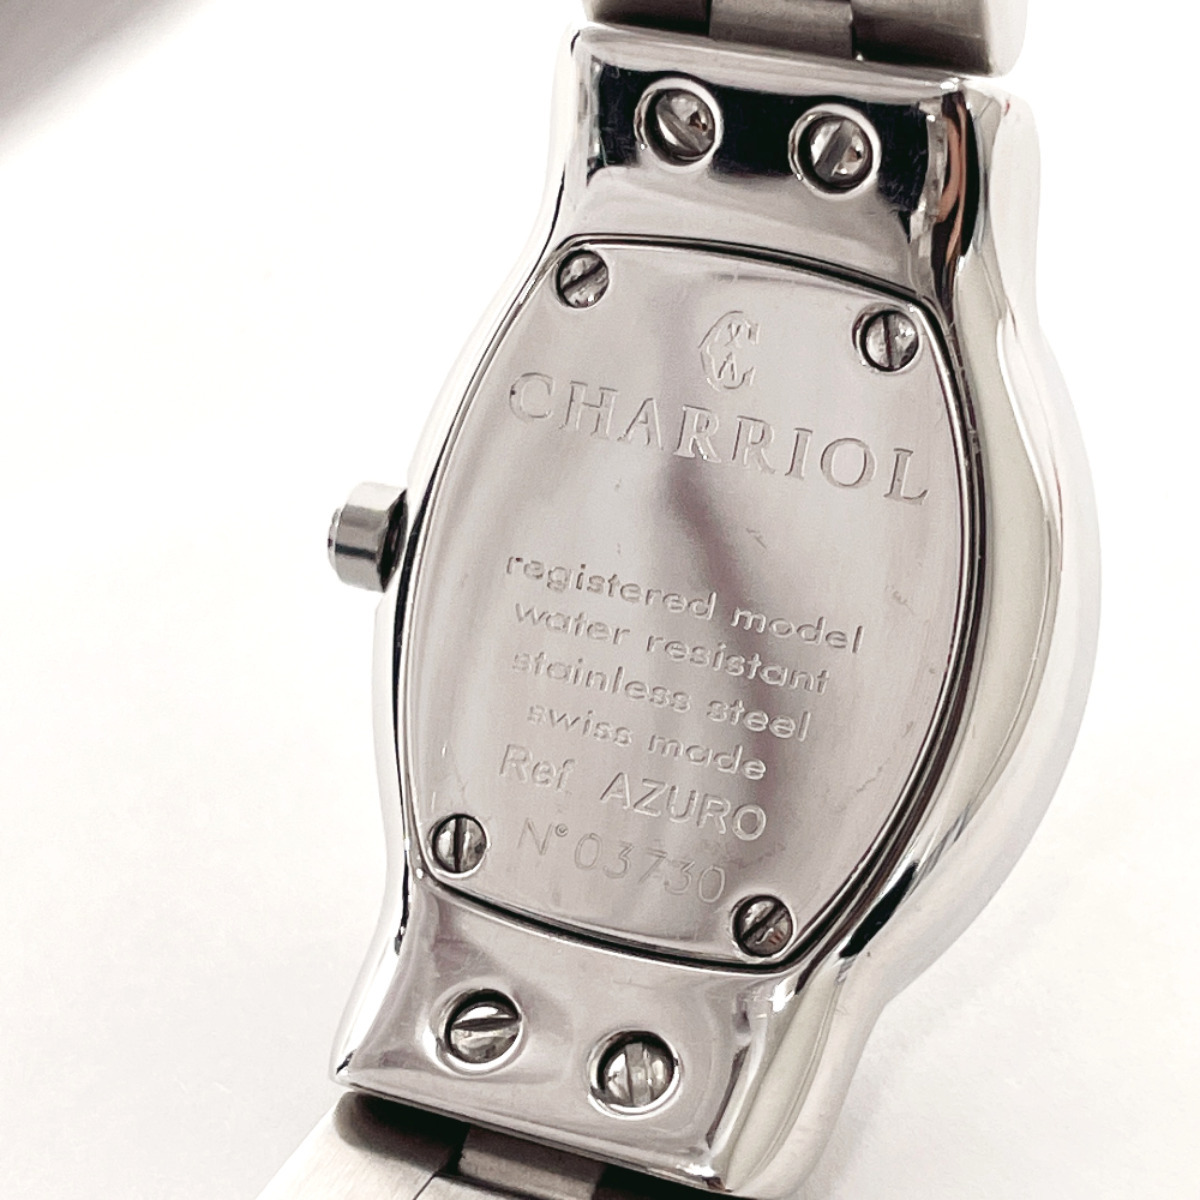  Charriol CHARRIOL наручные часы AZURO300900a Zoo ro нержавеющая сталь серебряный кварц 